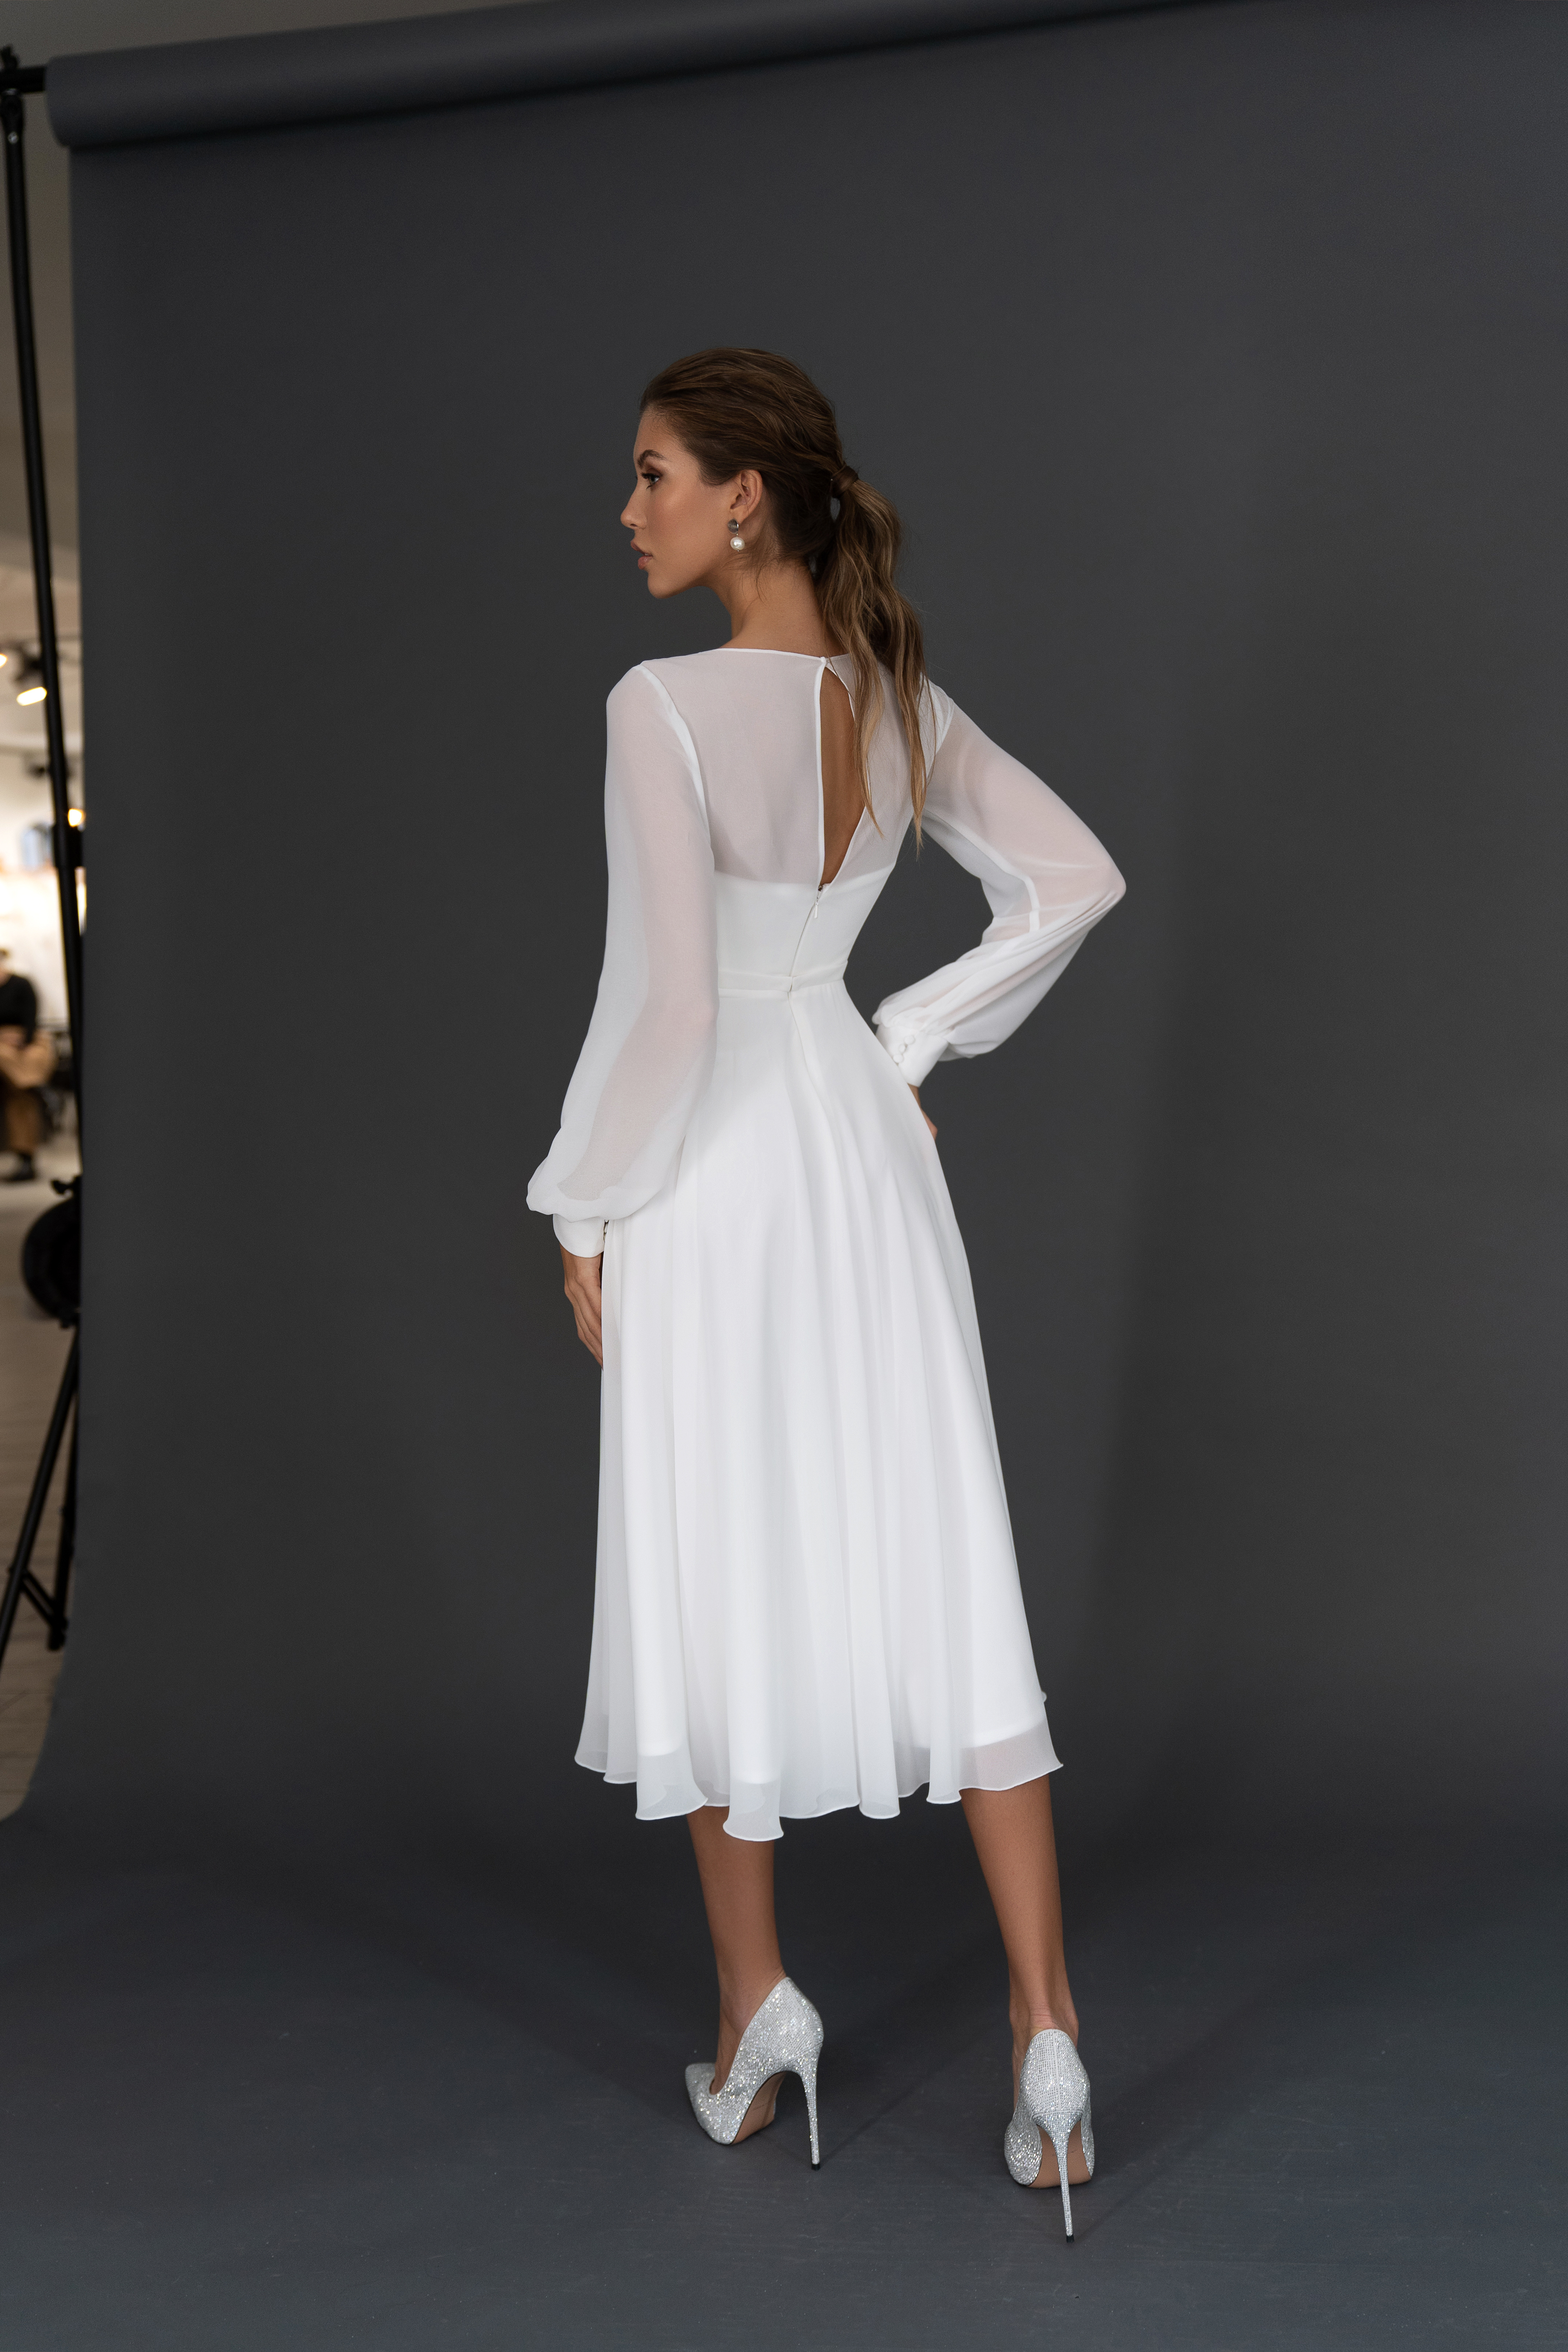 Свадебное платье «Осфадэль миди» Марта — купить в Казани платье Осфадэль из коллекции 2021 года